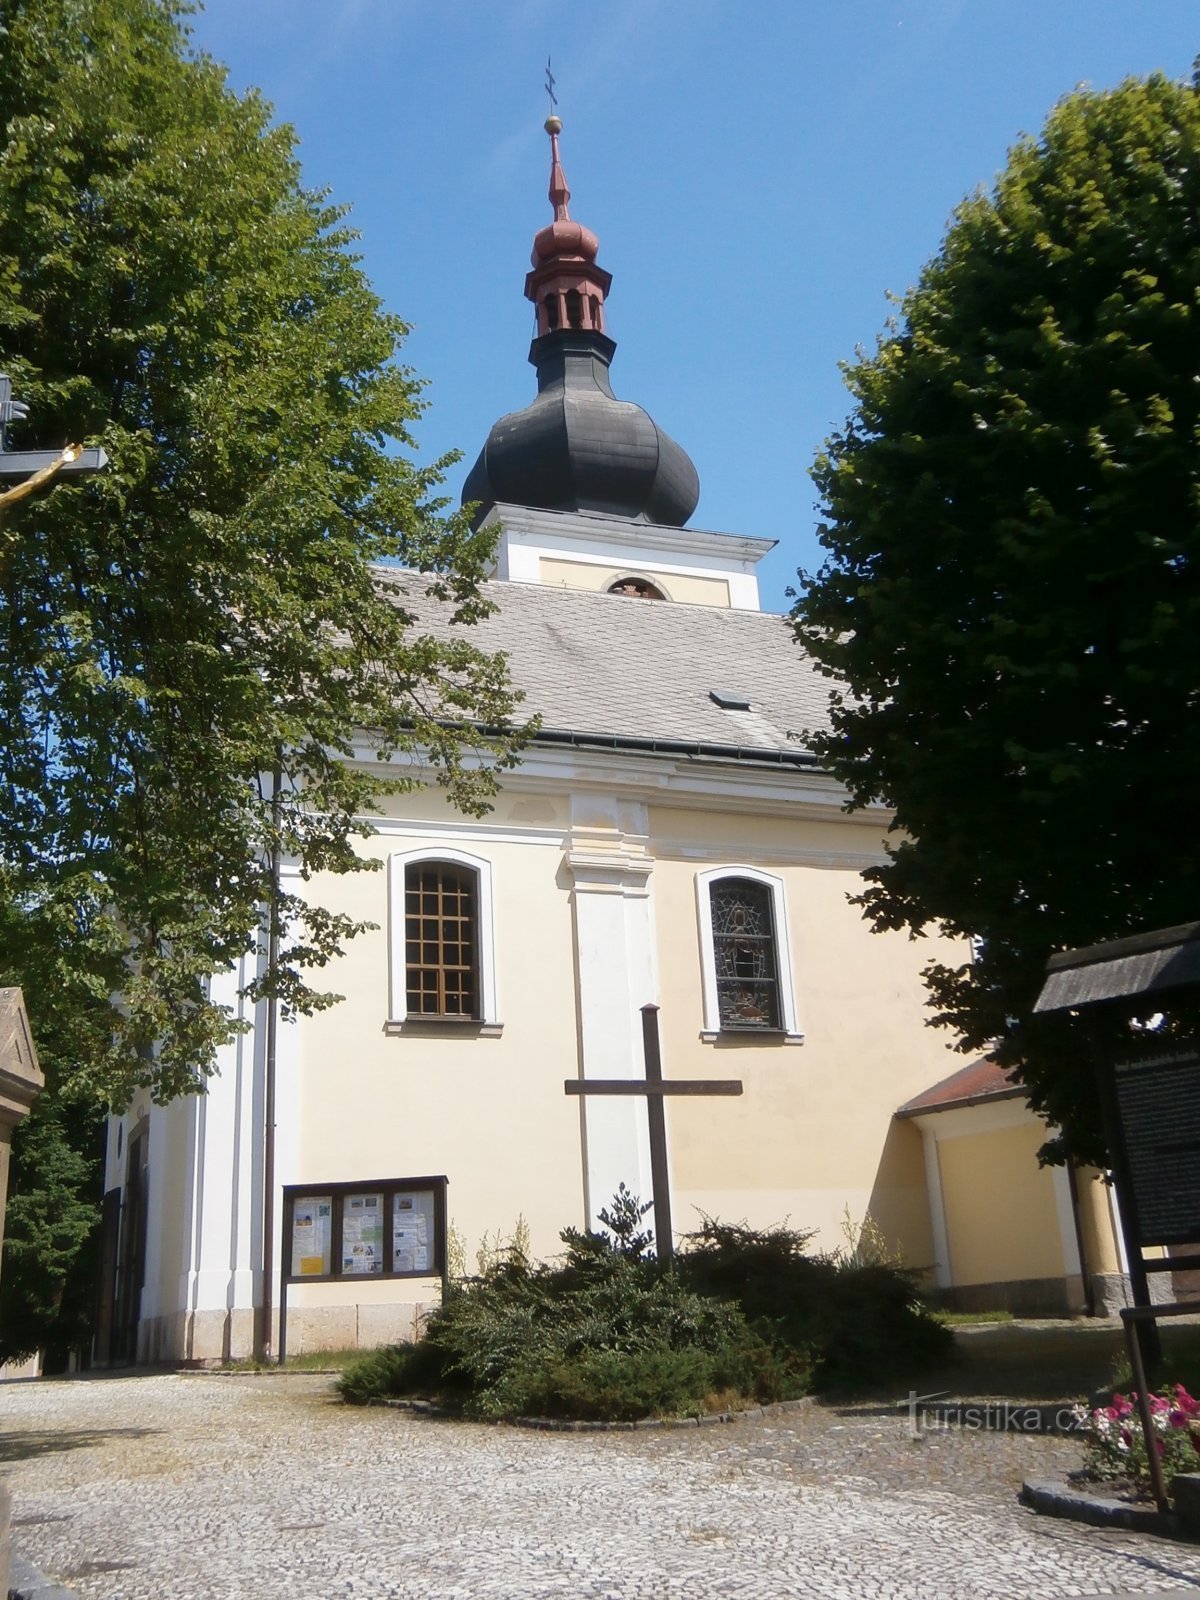 Biserica Adormirea Maicii Domnului (Česká Skalice)